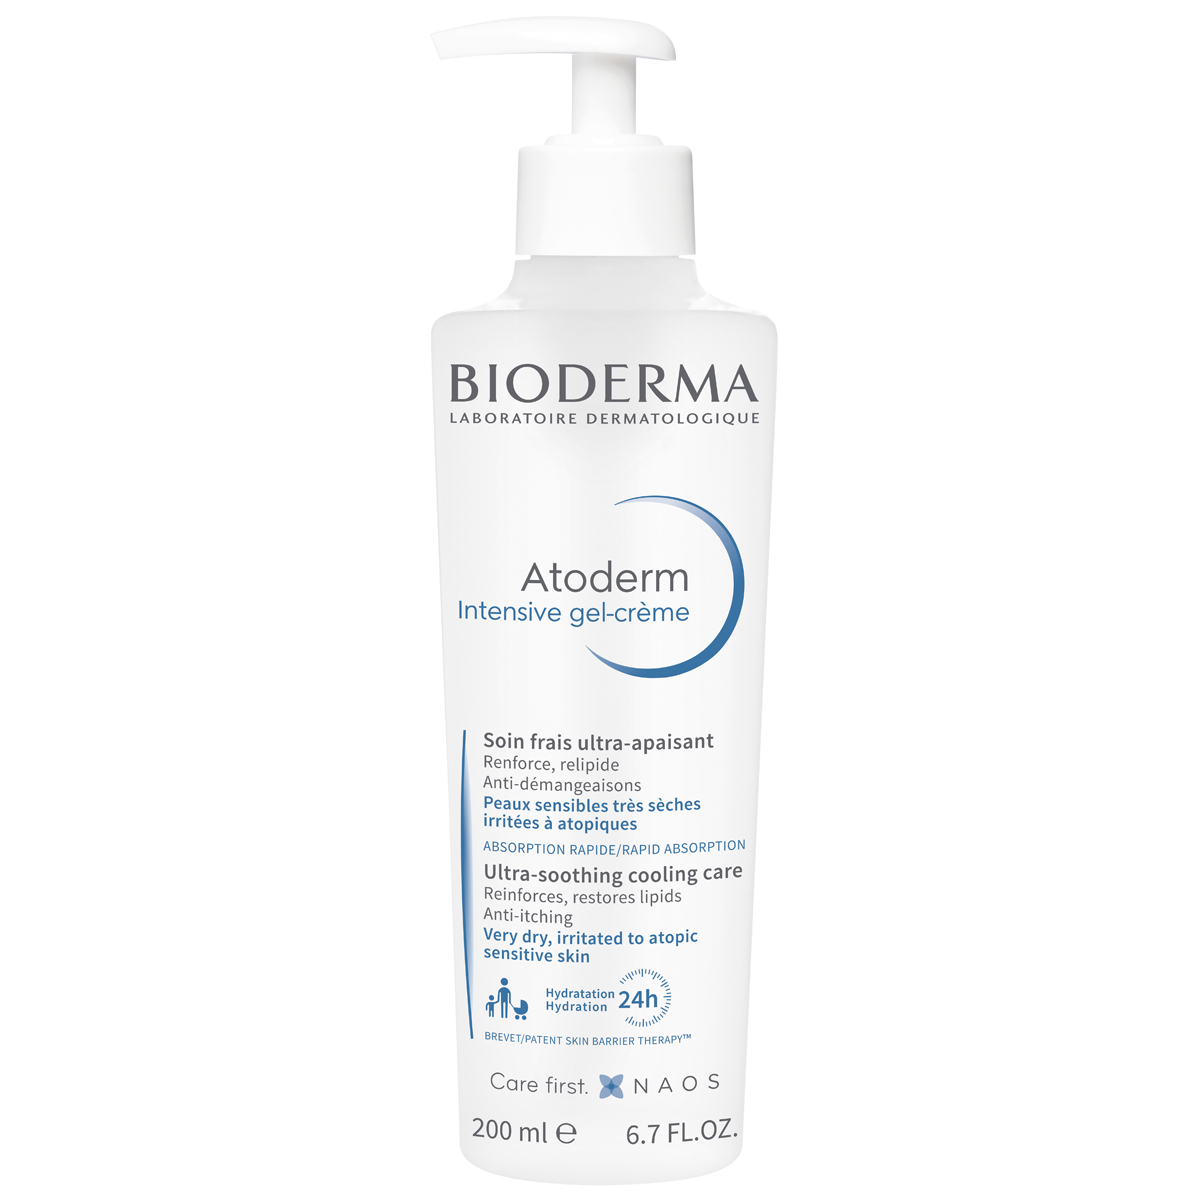 бальзам для тела bioderma бальзам для восстановления сухой и атопичной кожи лица и тела atoderm Bioderma Гель-крем Интенсив, 200 мл (Bioderma, Atoderm)